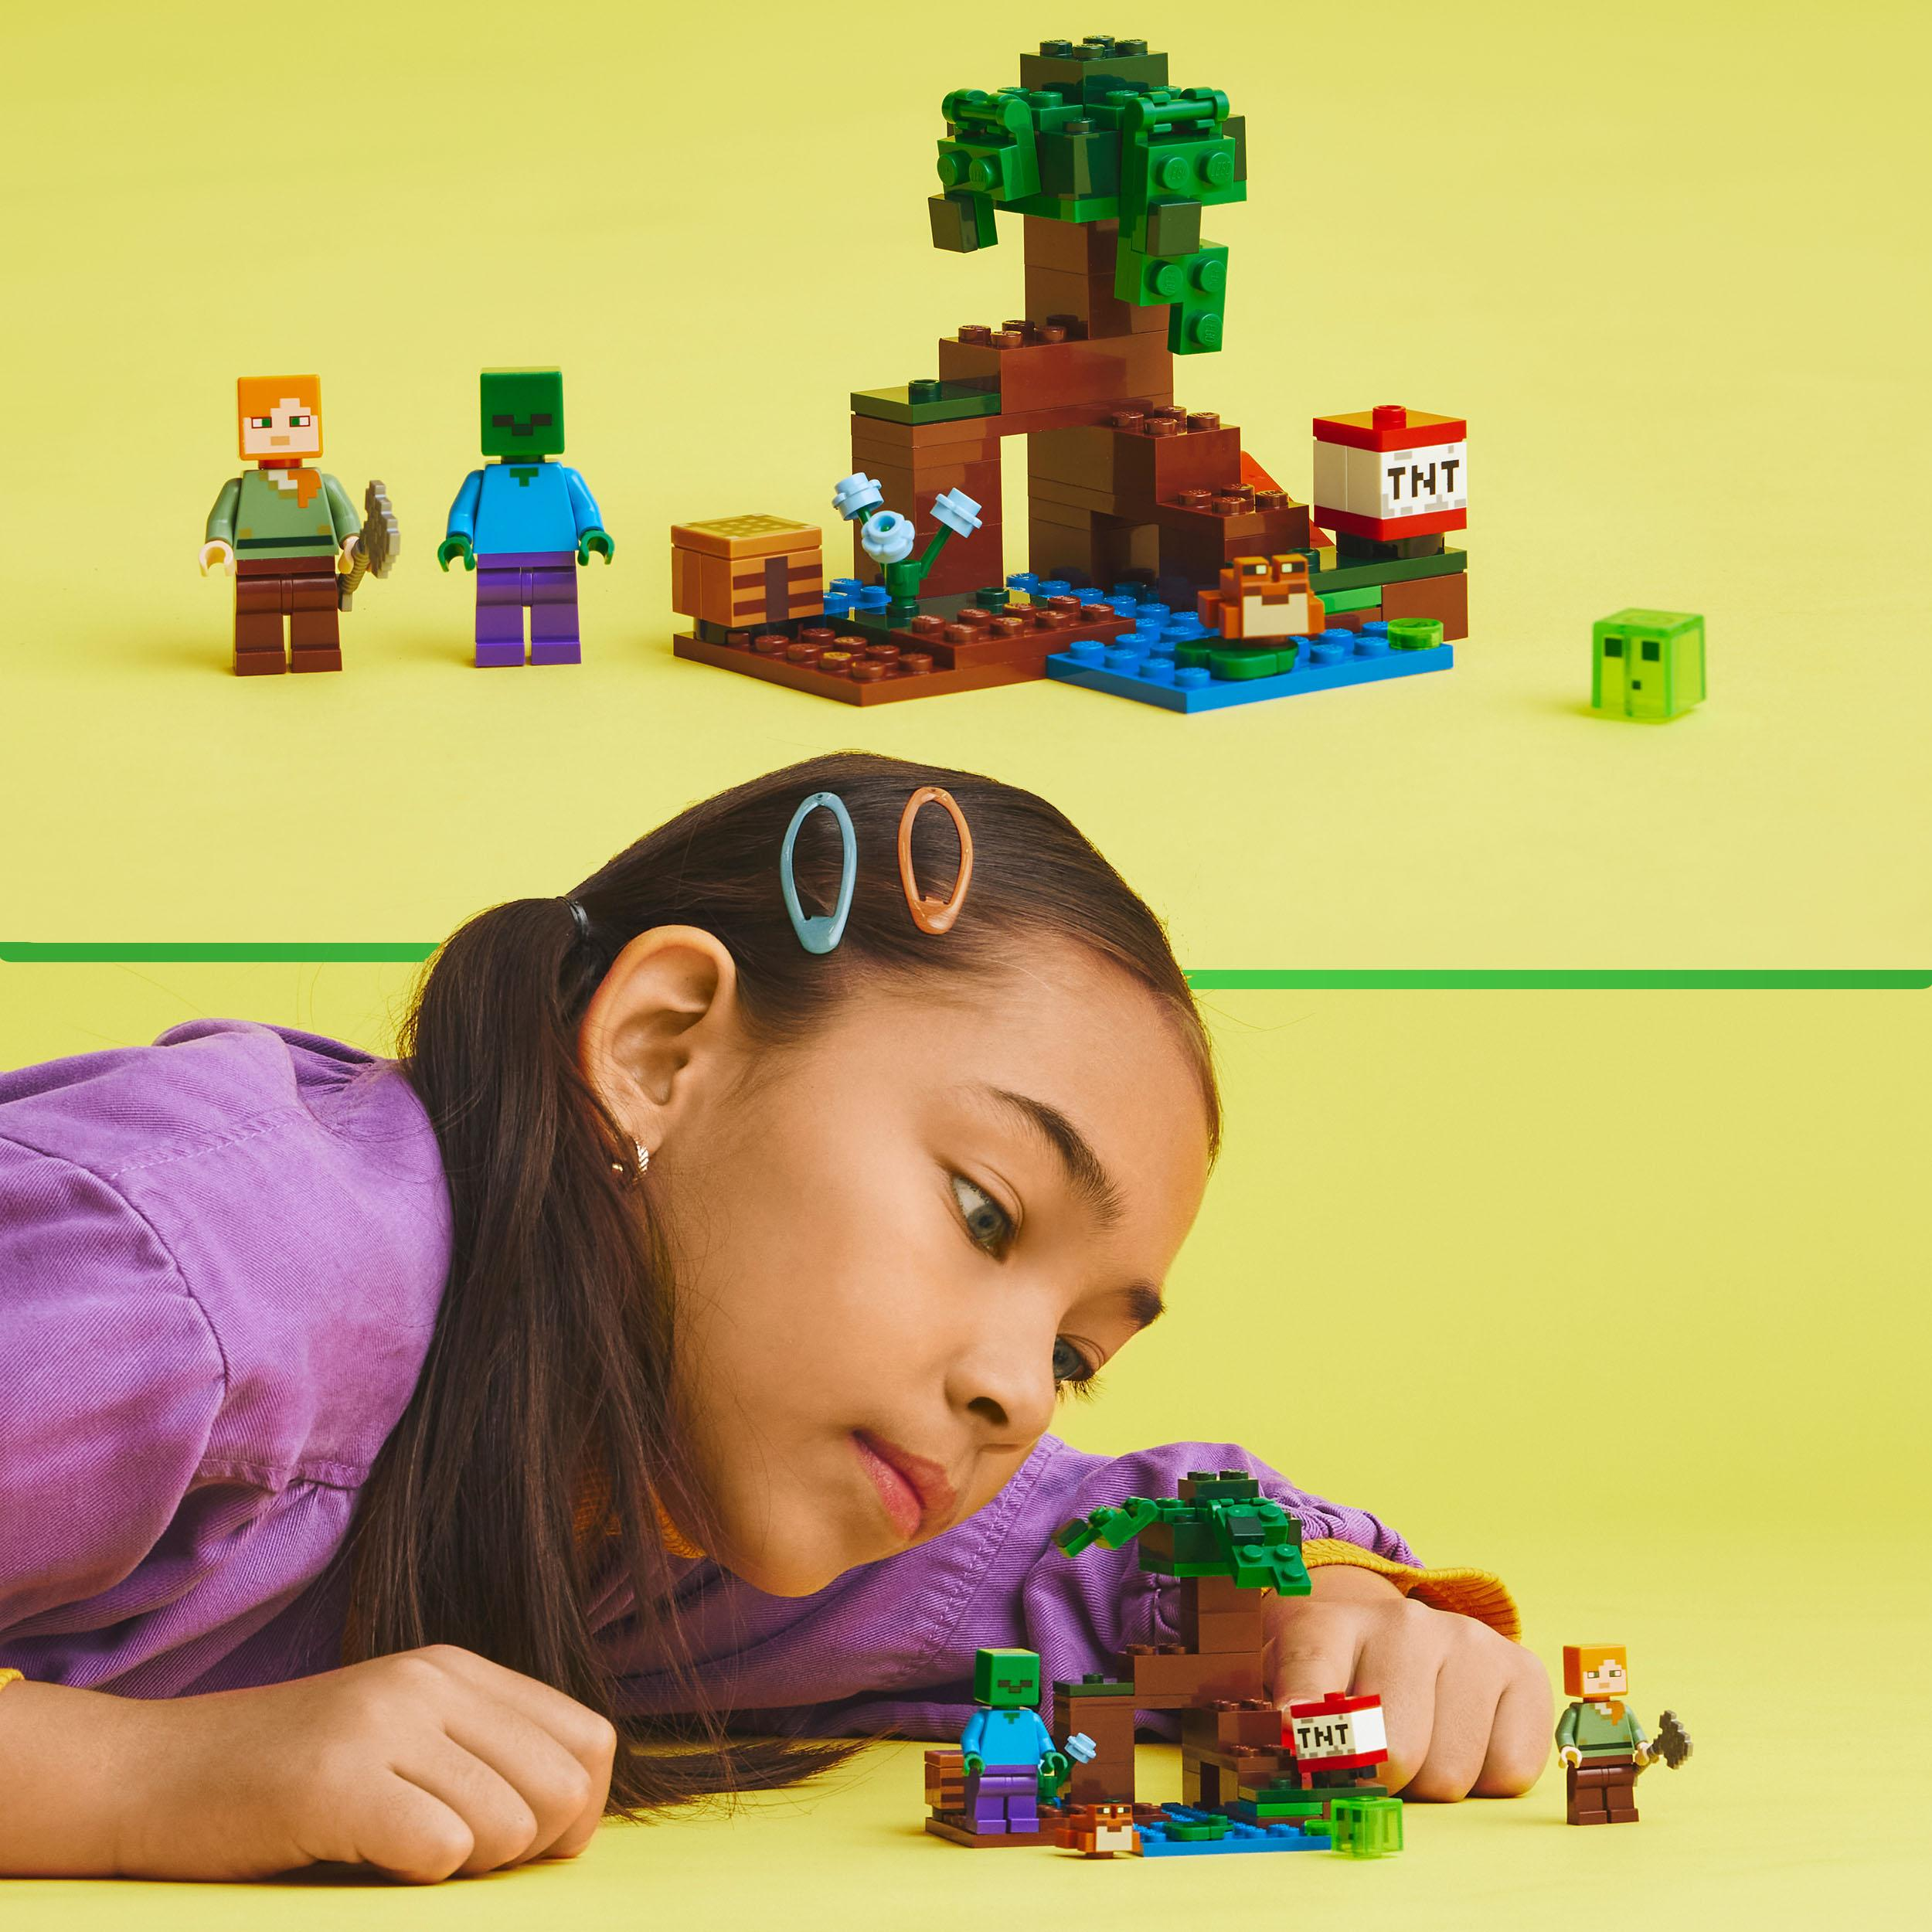 LEGO Minecraft 21240 Bausatz, Sumpfabenteuer Das Mehrfarbig